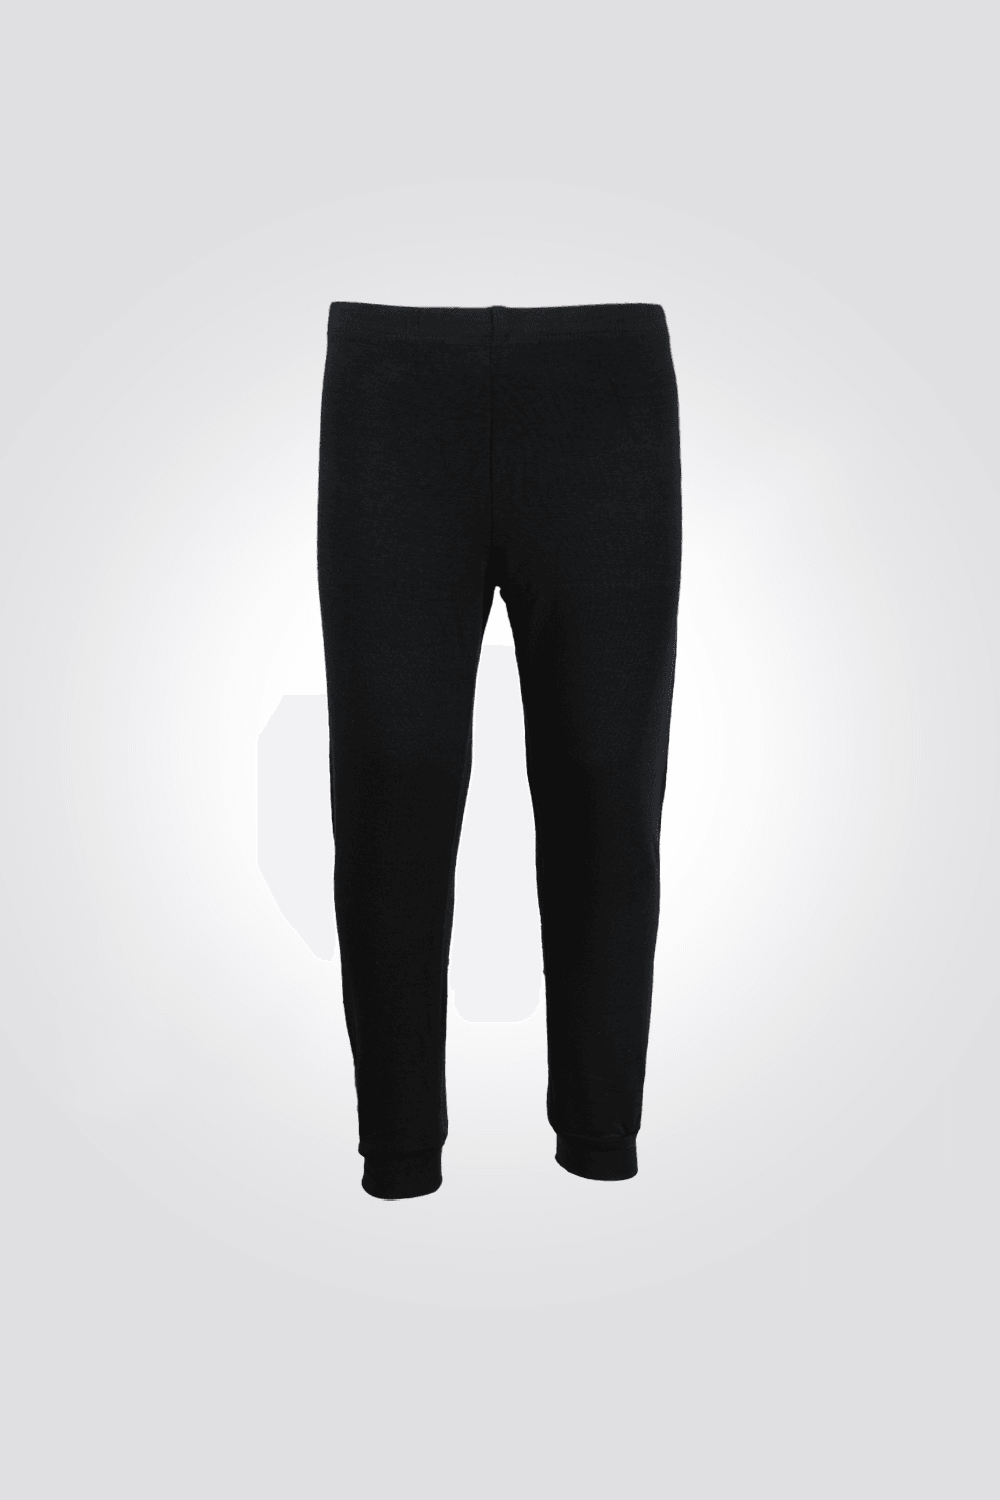 DELTA - מכנסיים תרמיים לילדים בצבע שחור - MASHBIR//365